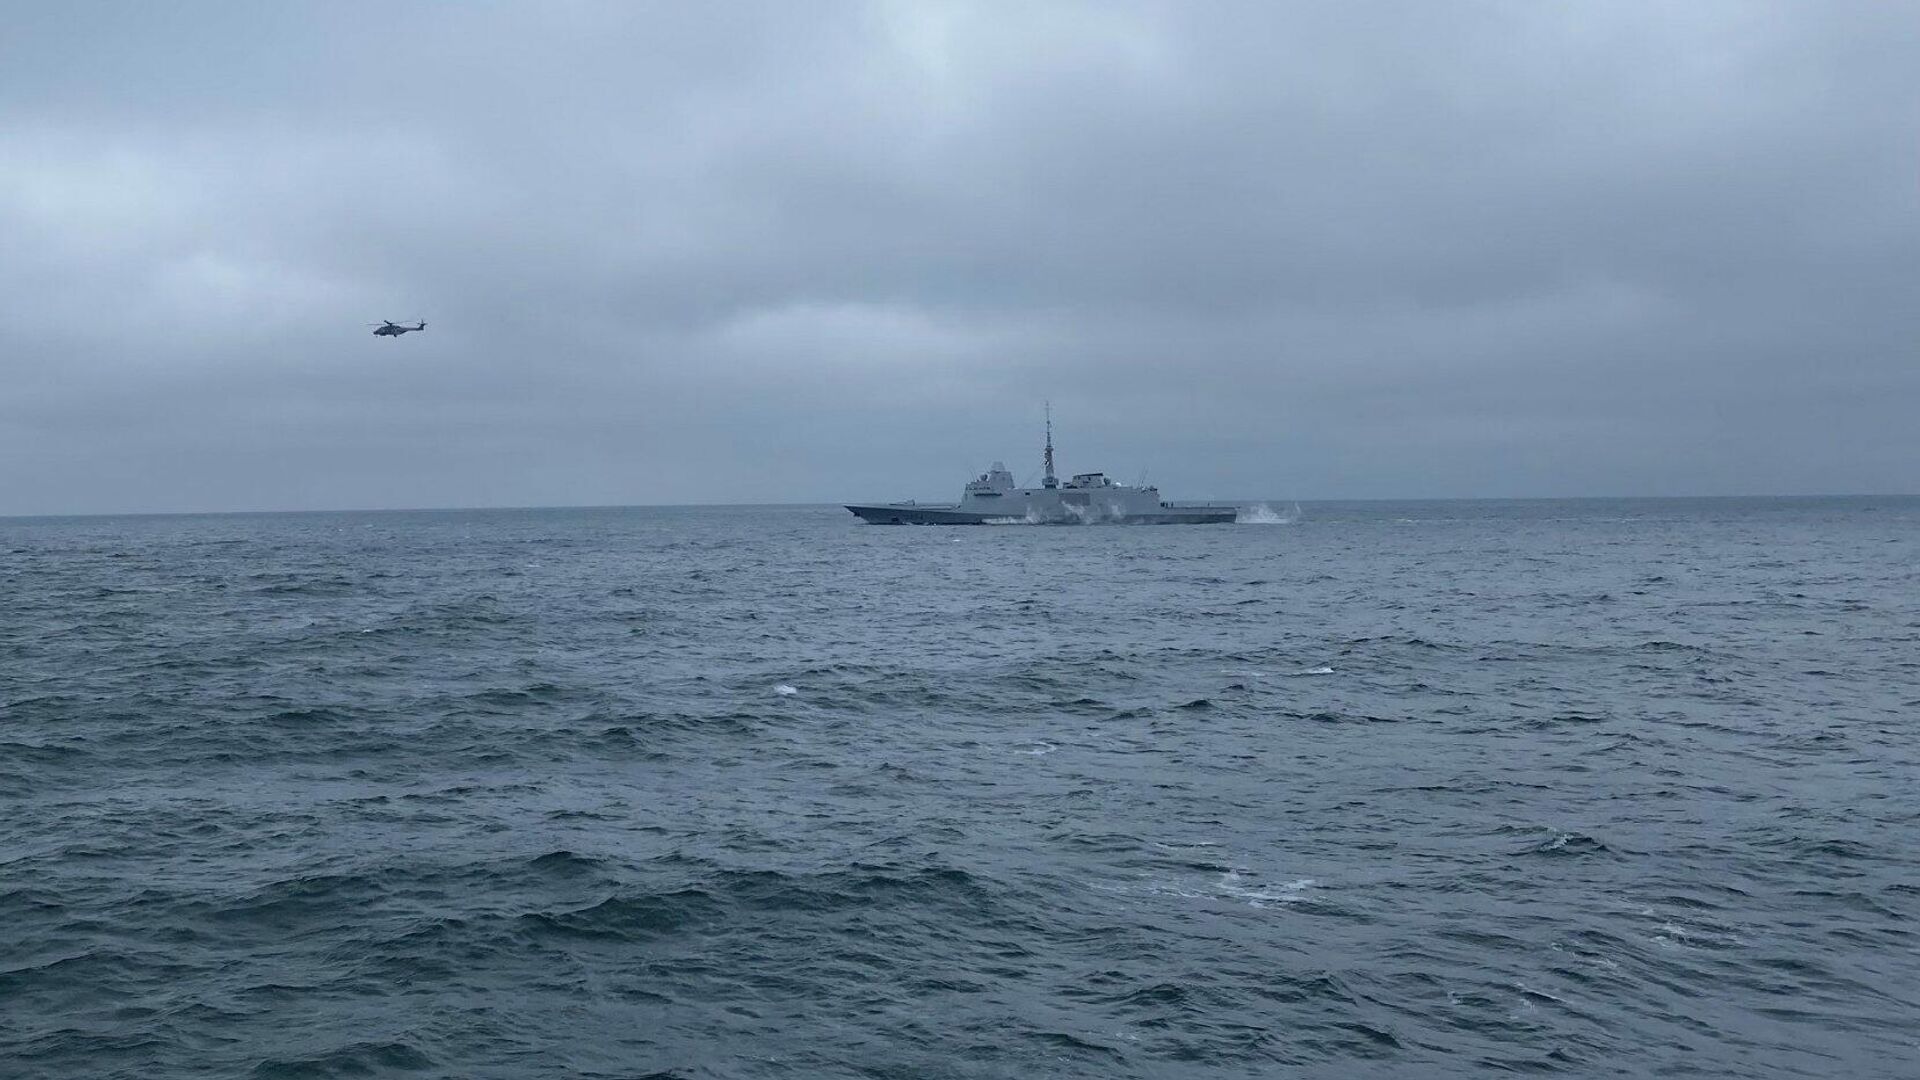 ВМС Украины и Франции провели в Черном море тренировку типа PASSEX - РИА Новости, 1920, 30.12.2021